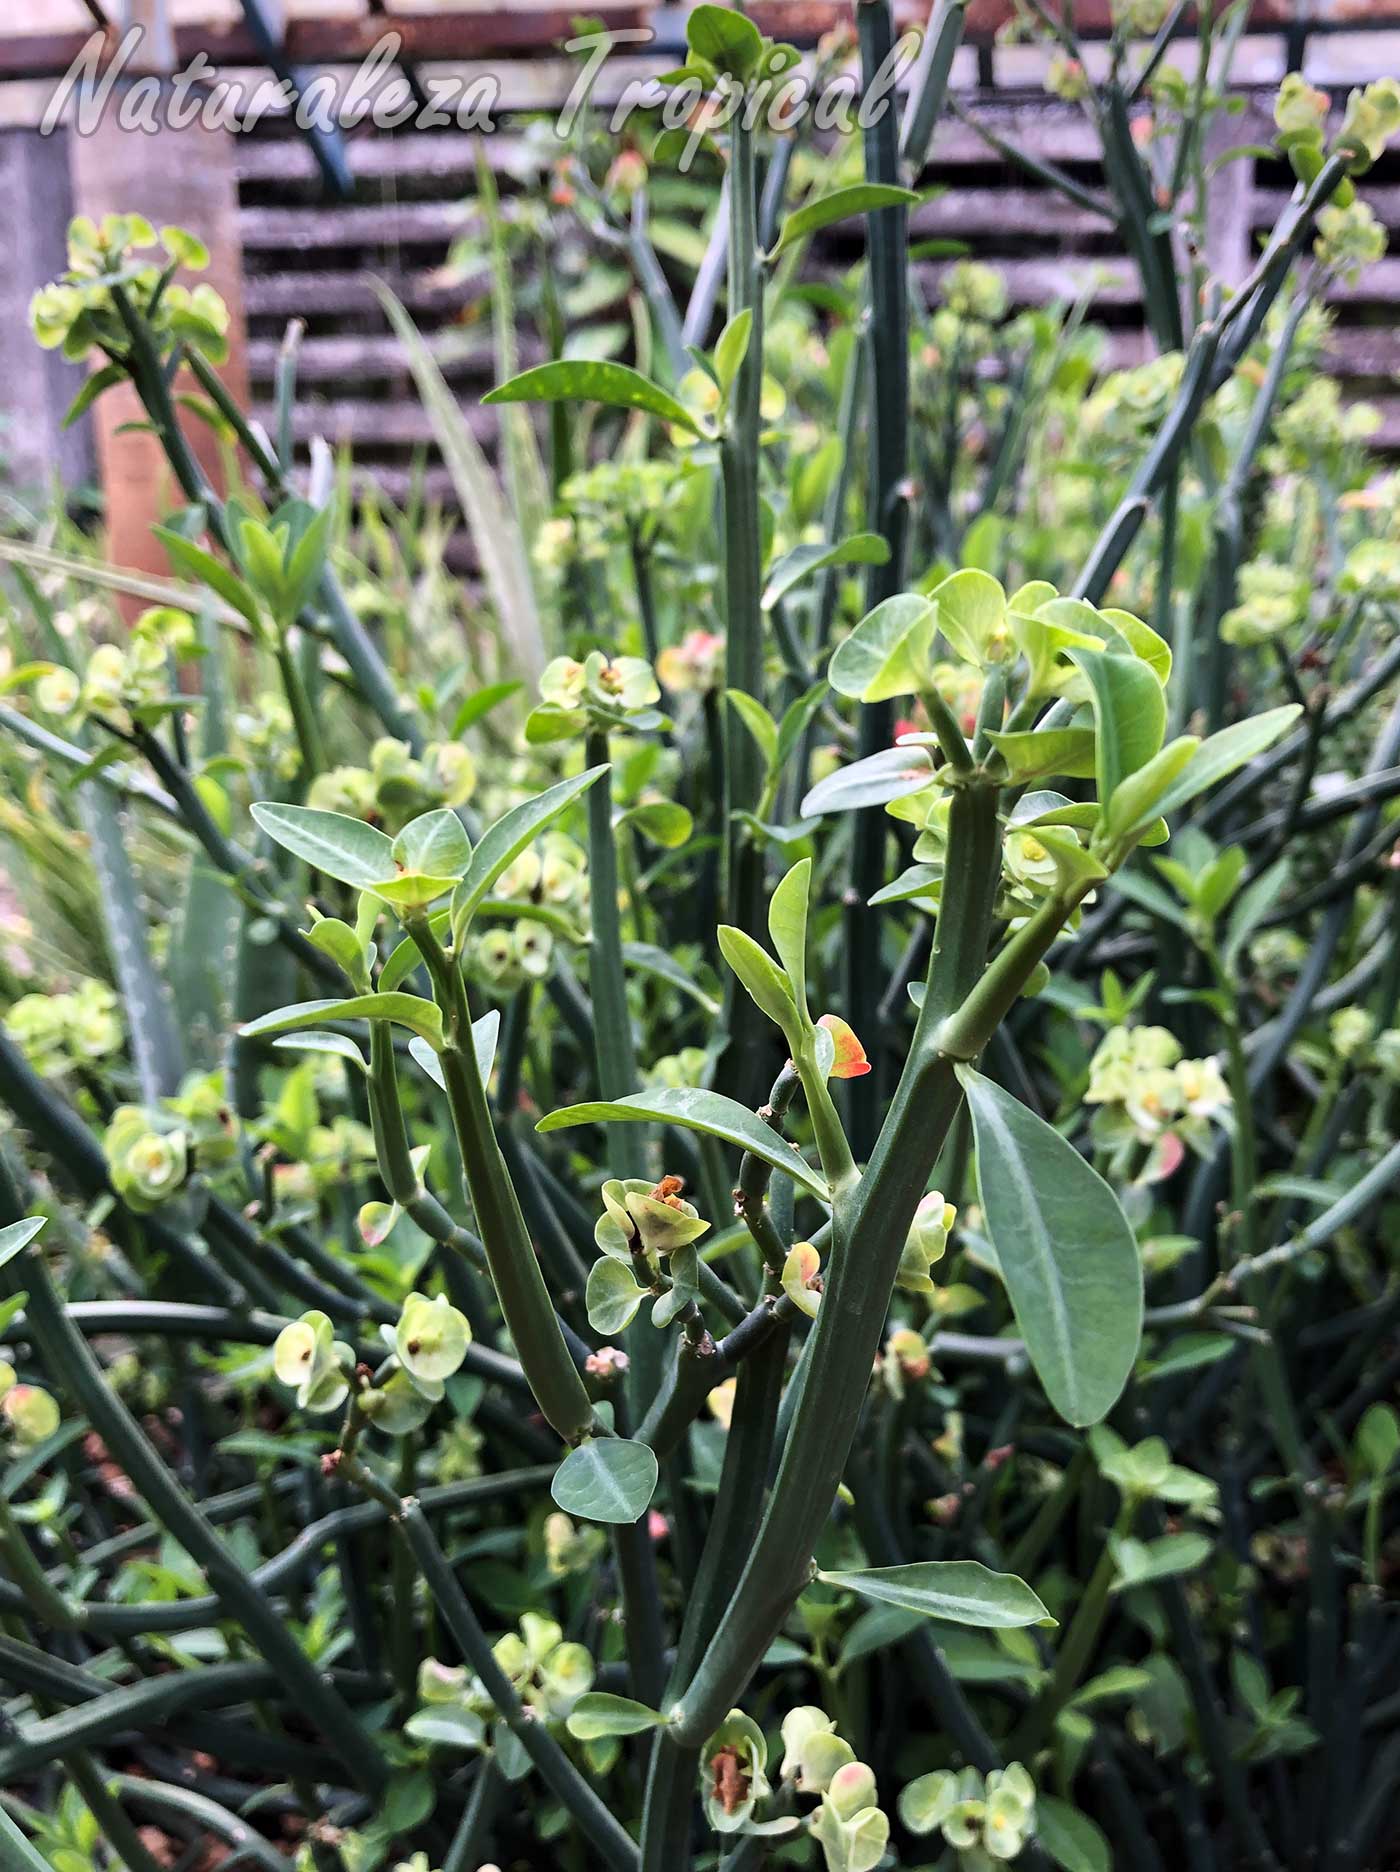 Vista de los tallos y hojas de la planta Euphorbia pteroneura